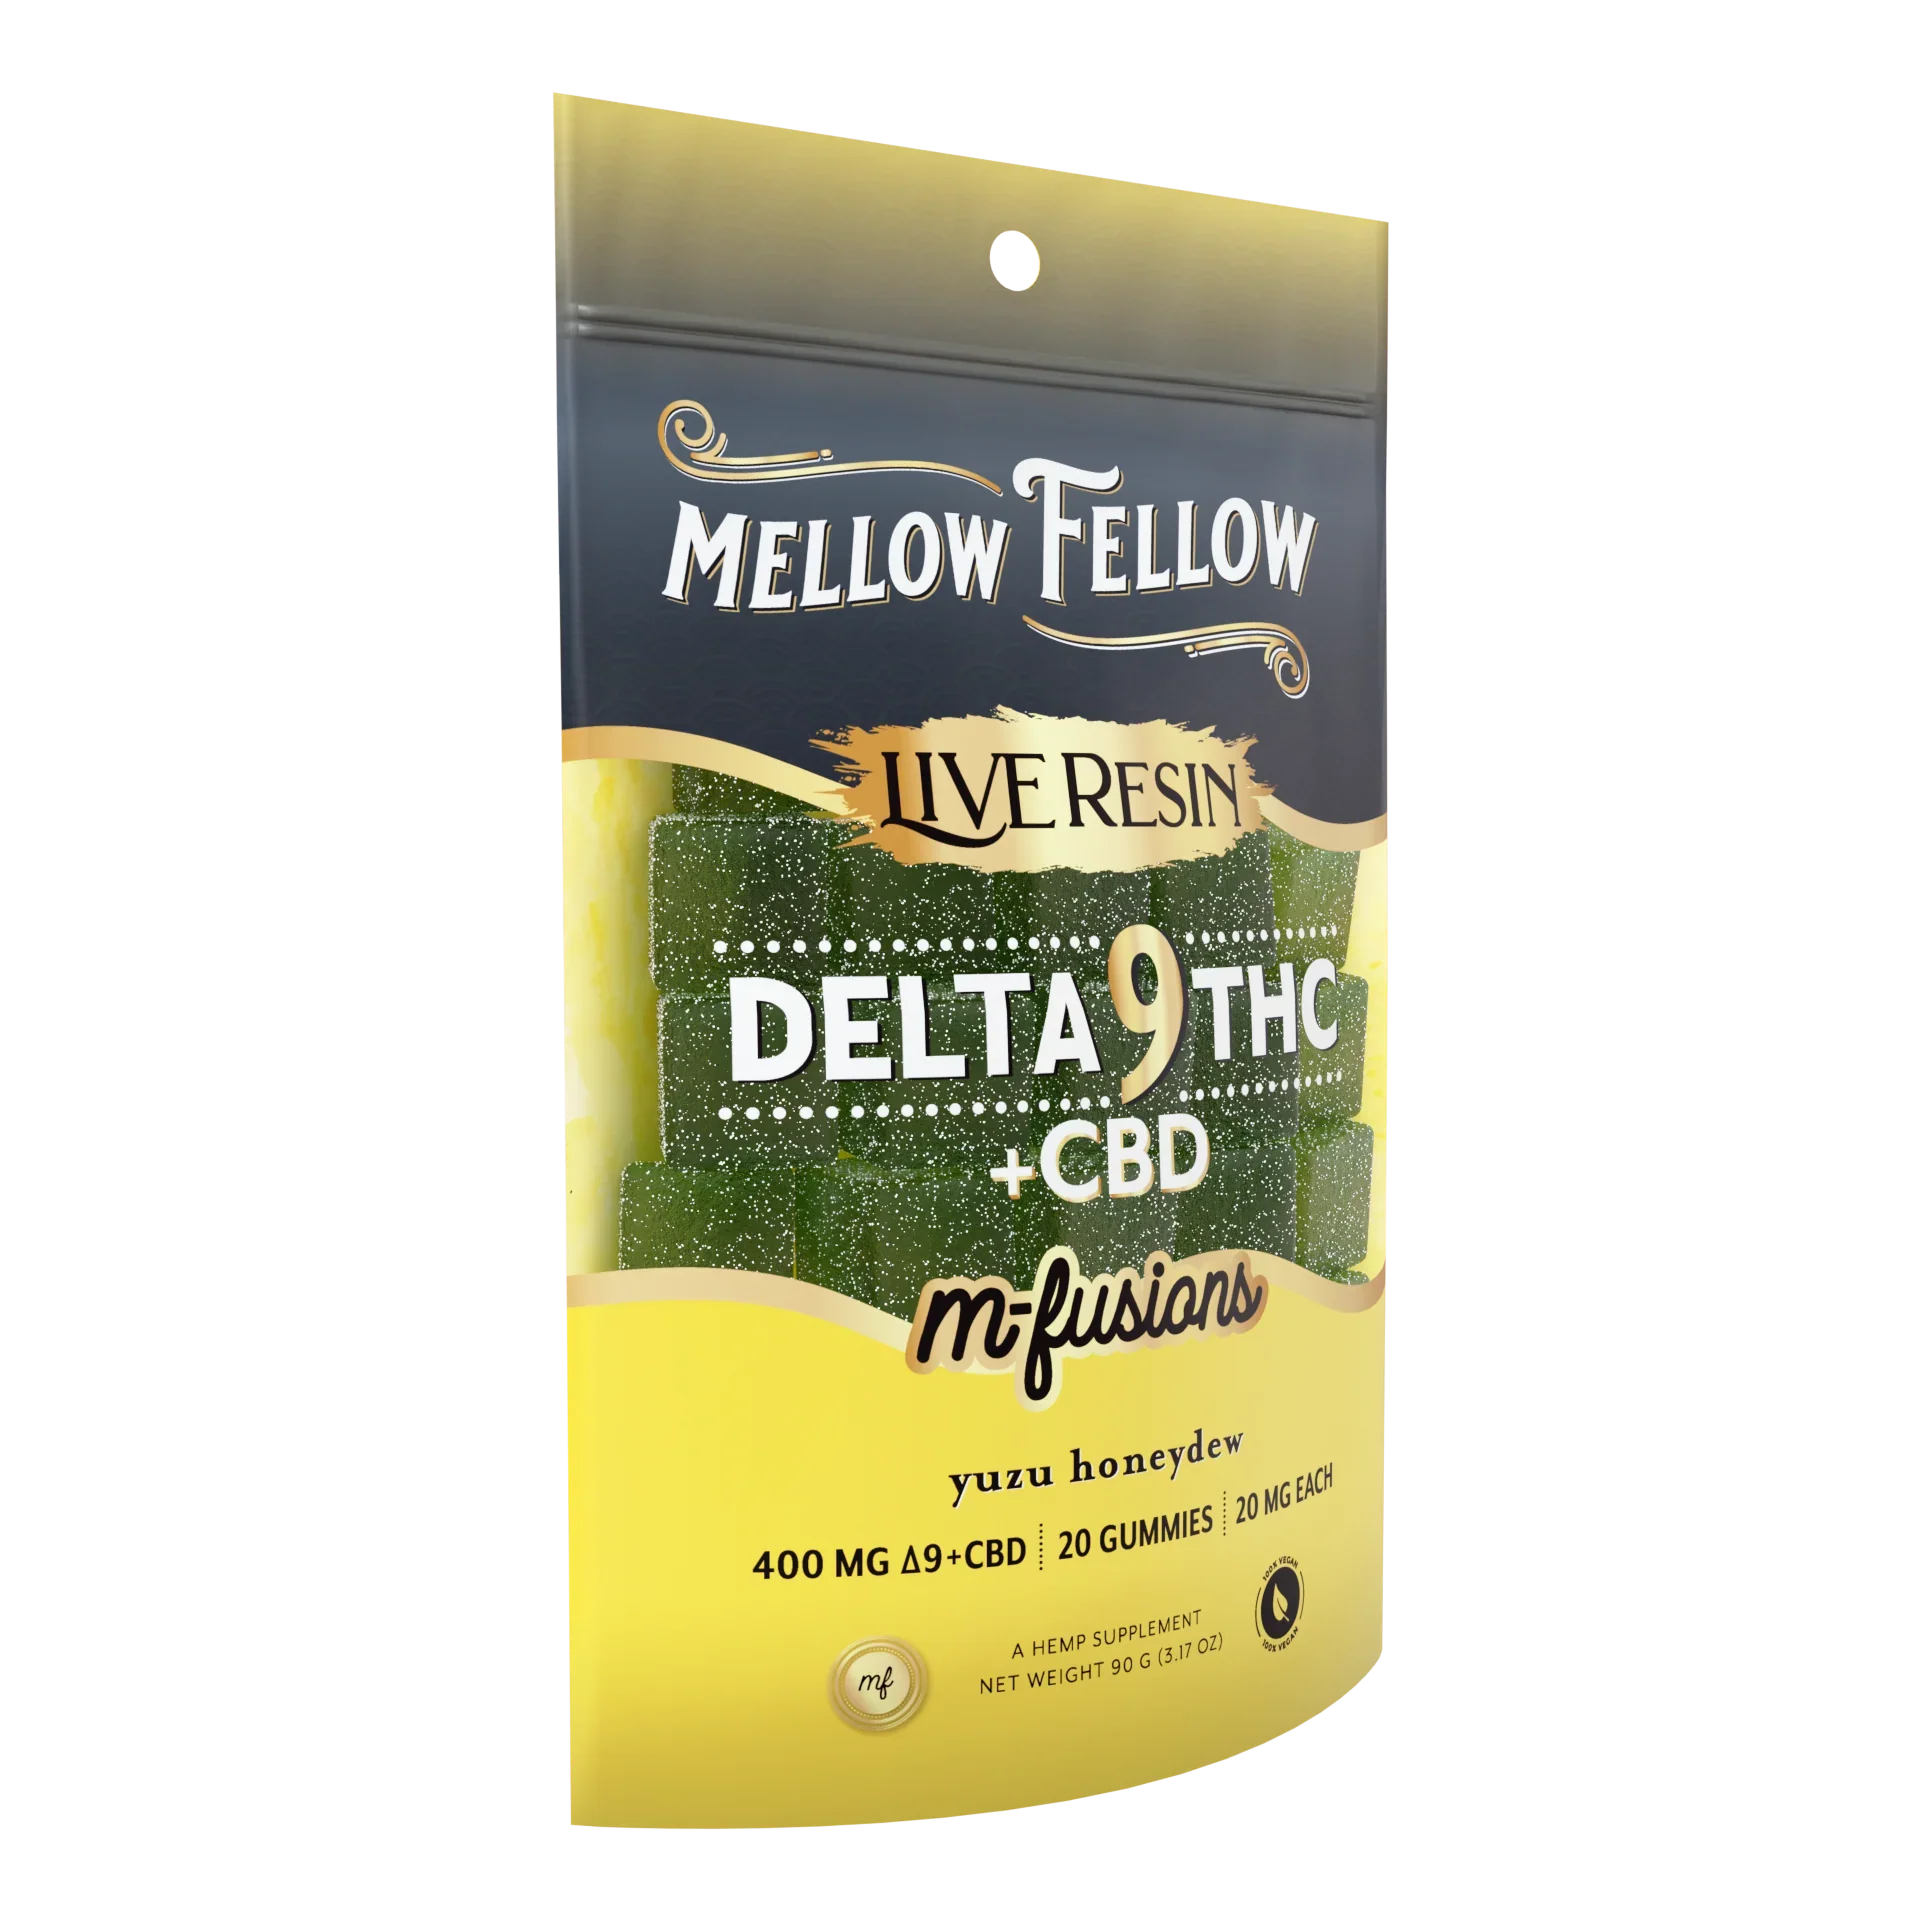 Mellow Fellow Delta 9 Live Resin Edibles 400mg - Yuzu Honeydew Best Price